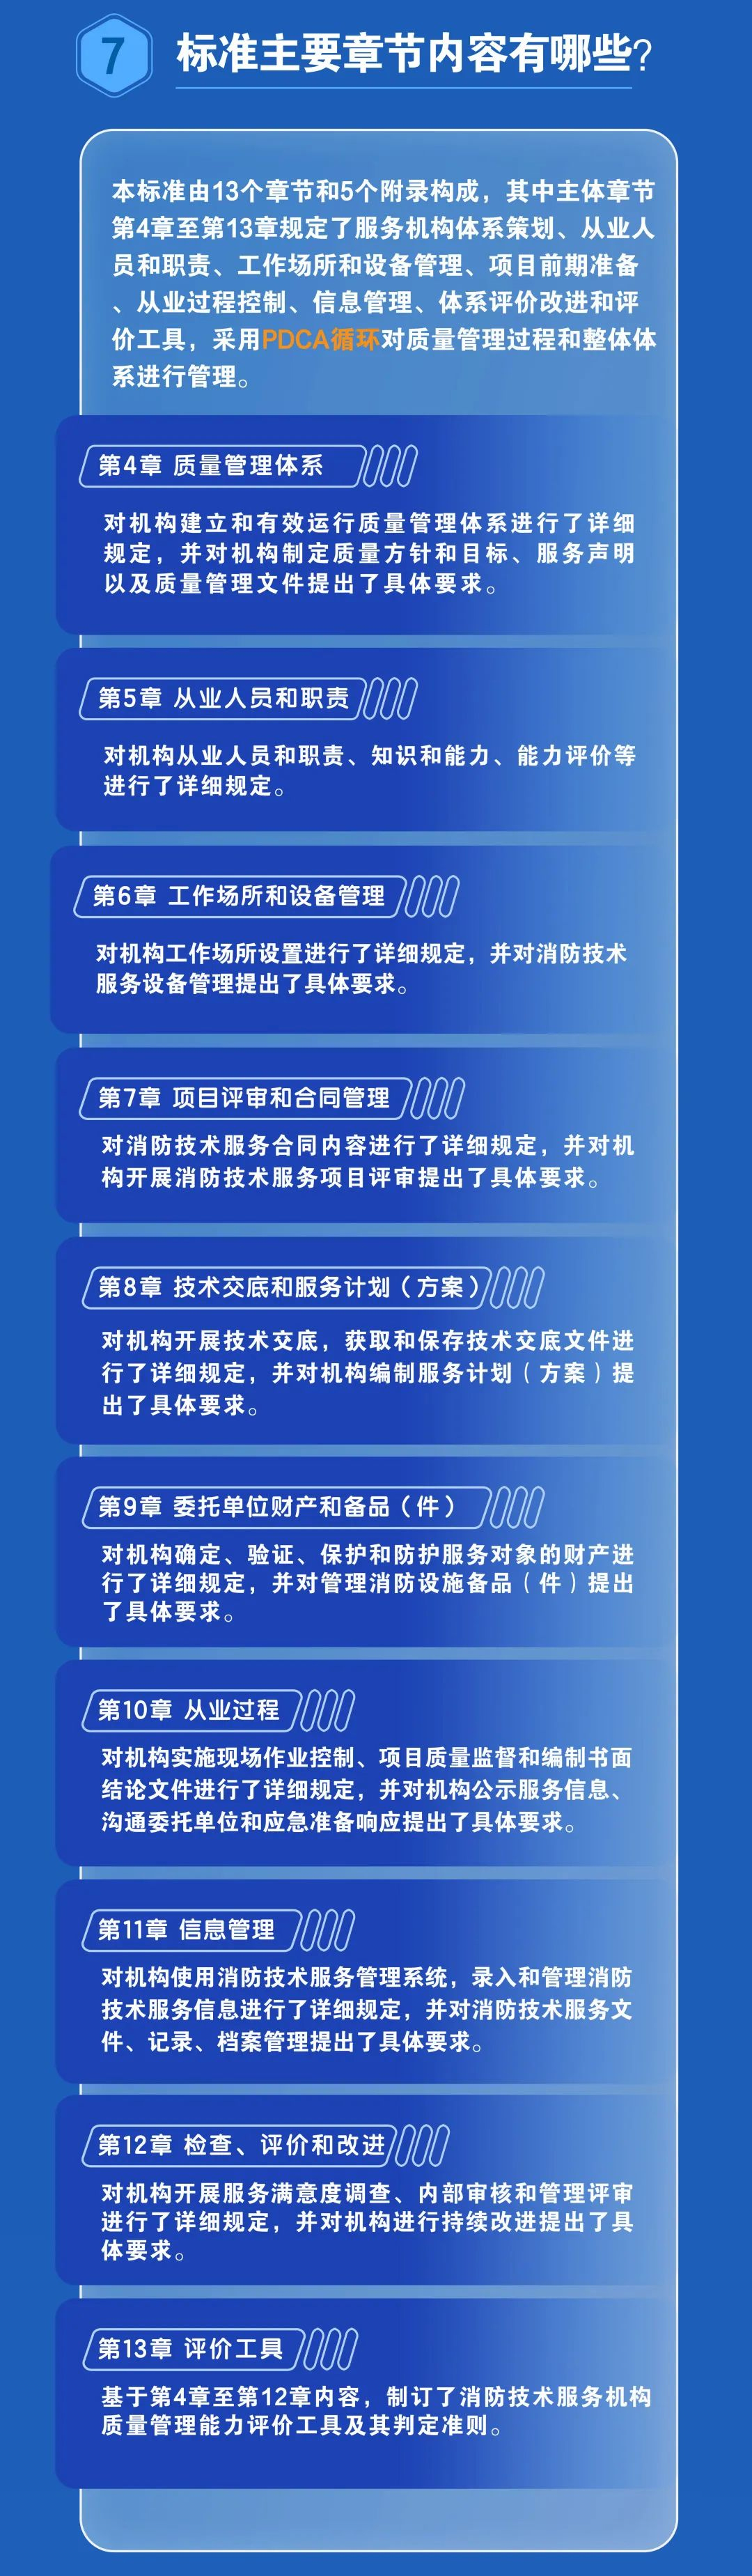 上海地标《社会消防技术服务机构质量管理要求》